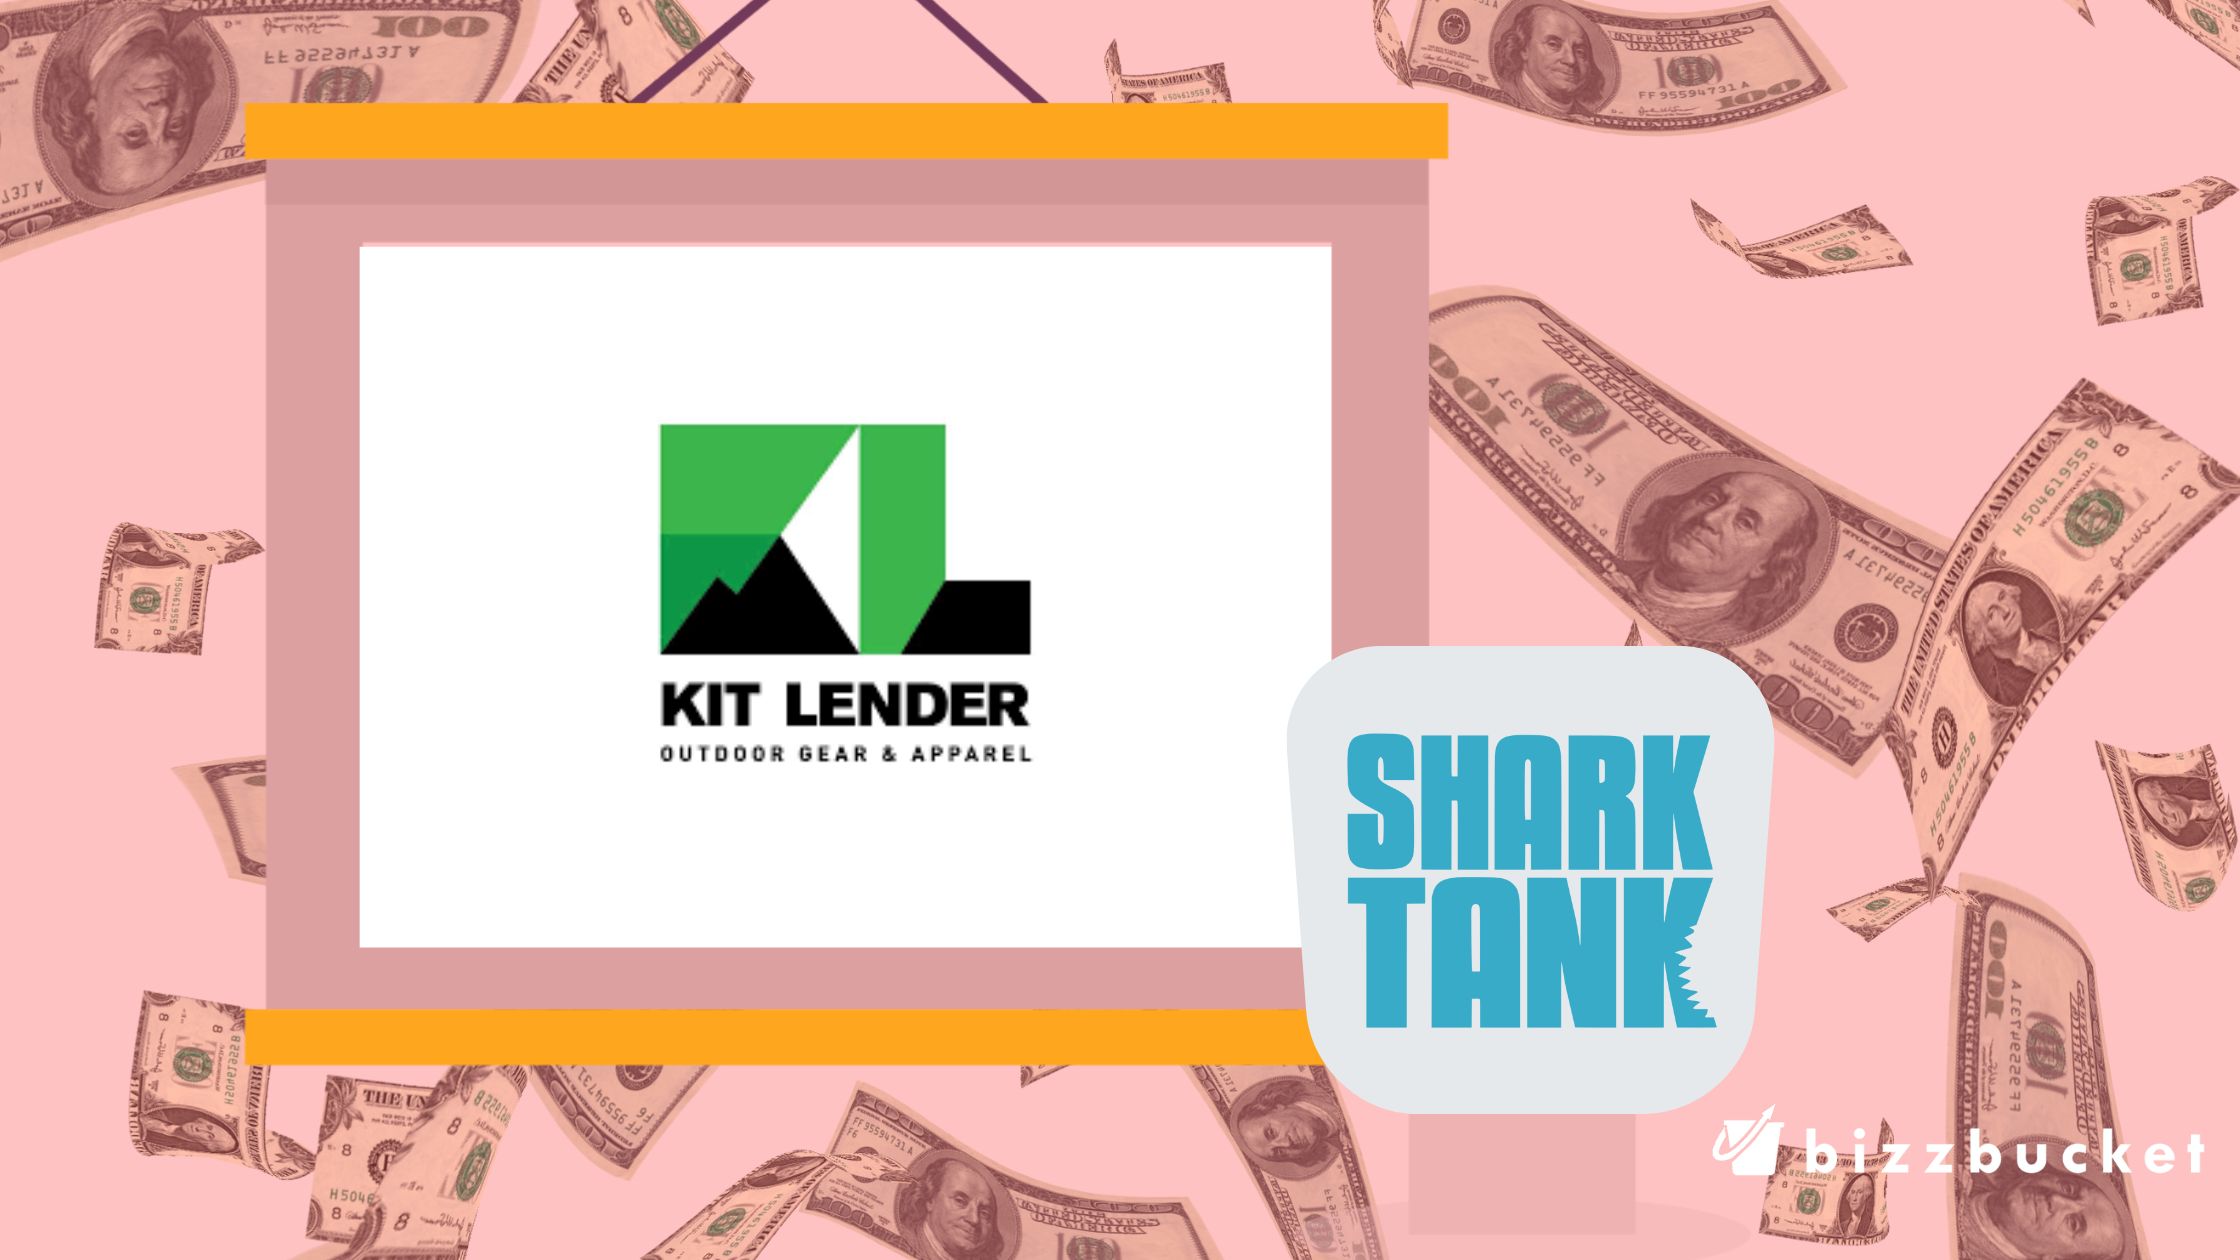 Kit Lender shark tank update